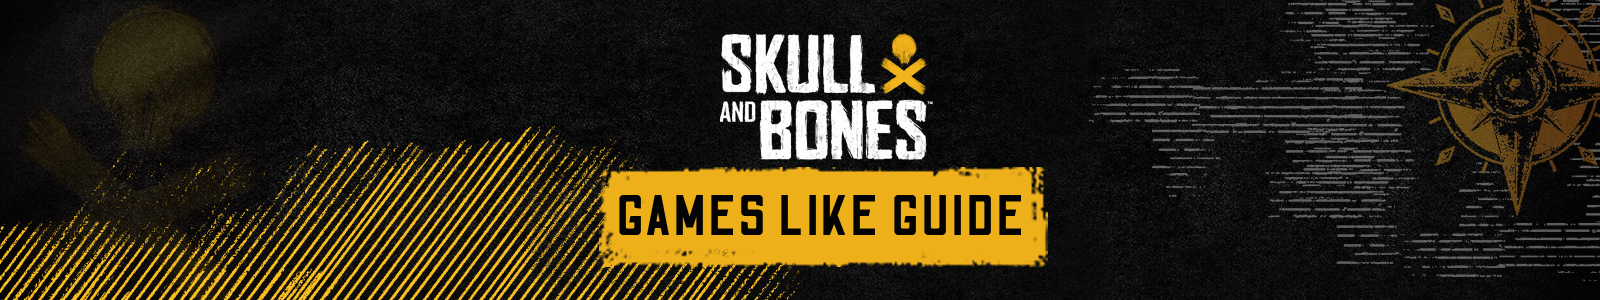 Skull & Bones spellen zoals gids